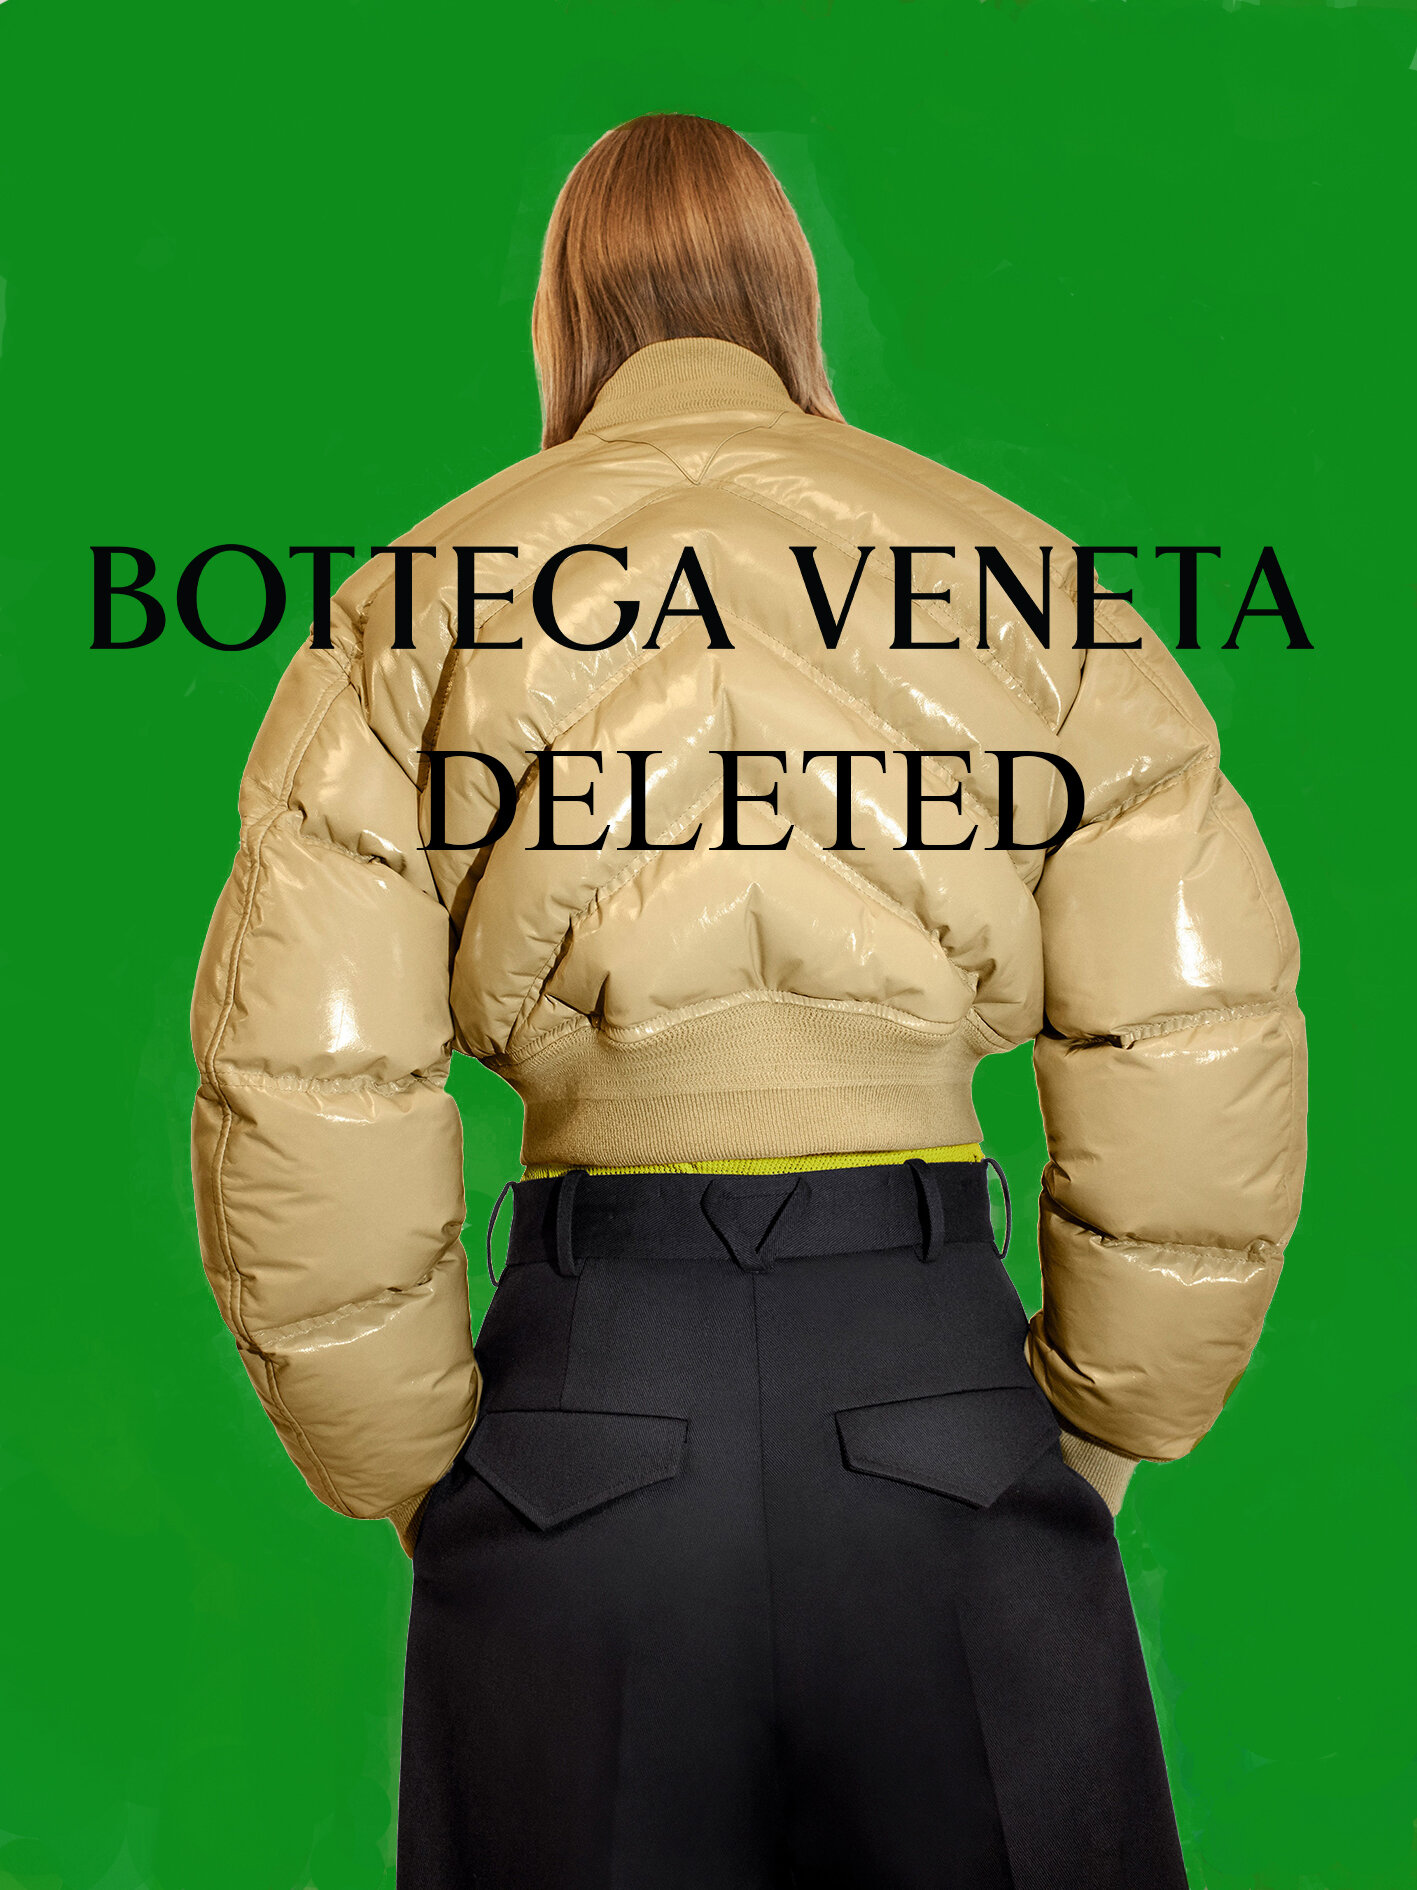 Bottega Veneta - The Invisible Store